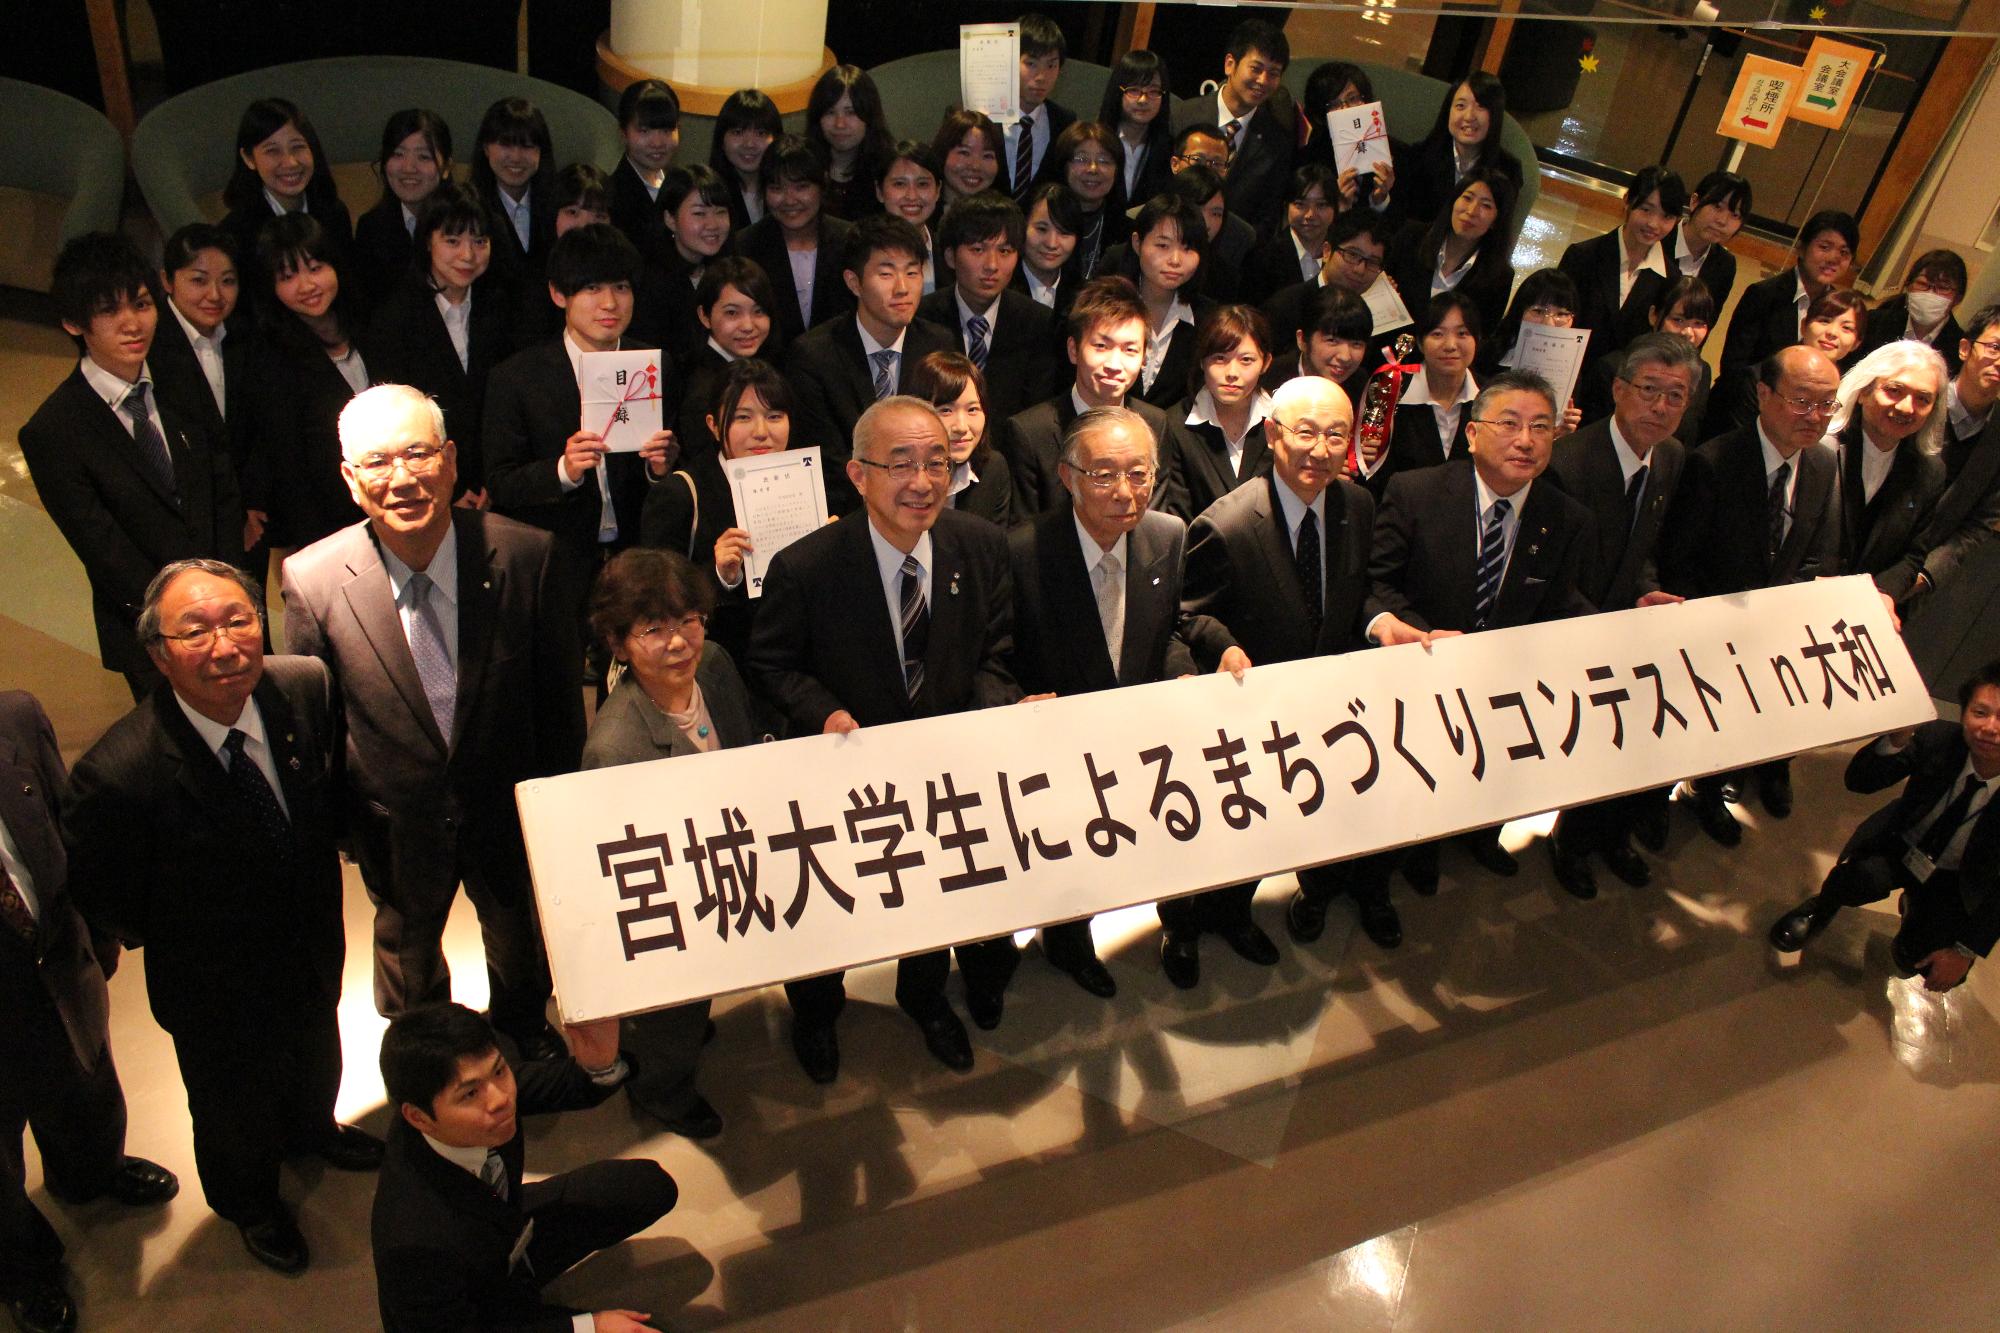 「宮城大学生によるまちづくりコンテストin大和」と書かれた横断幕を手に持った参加者たちの集合写真